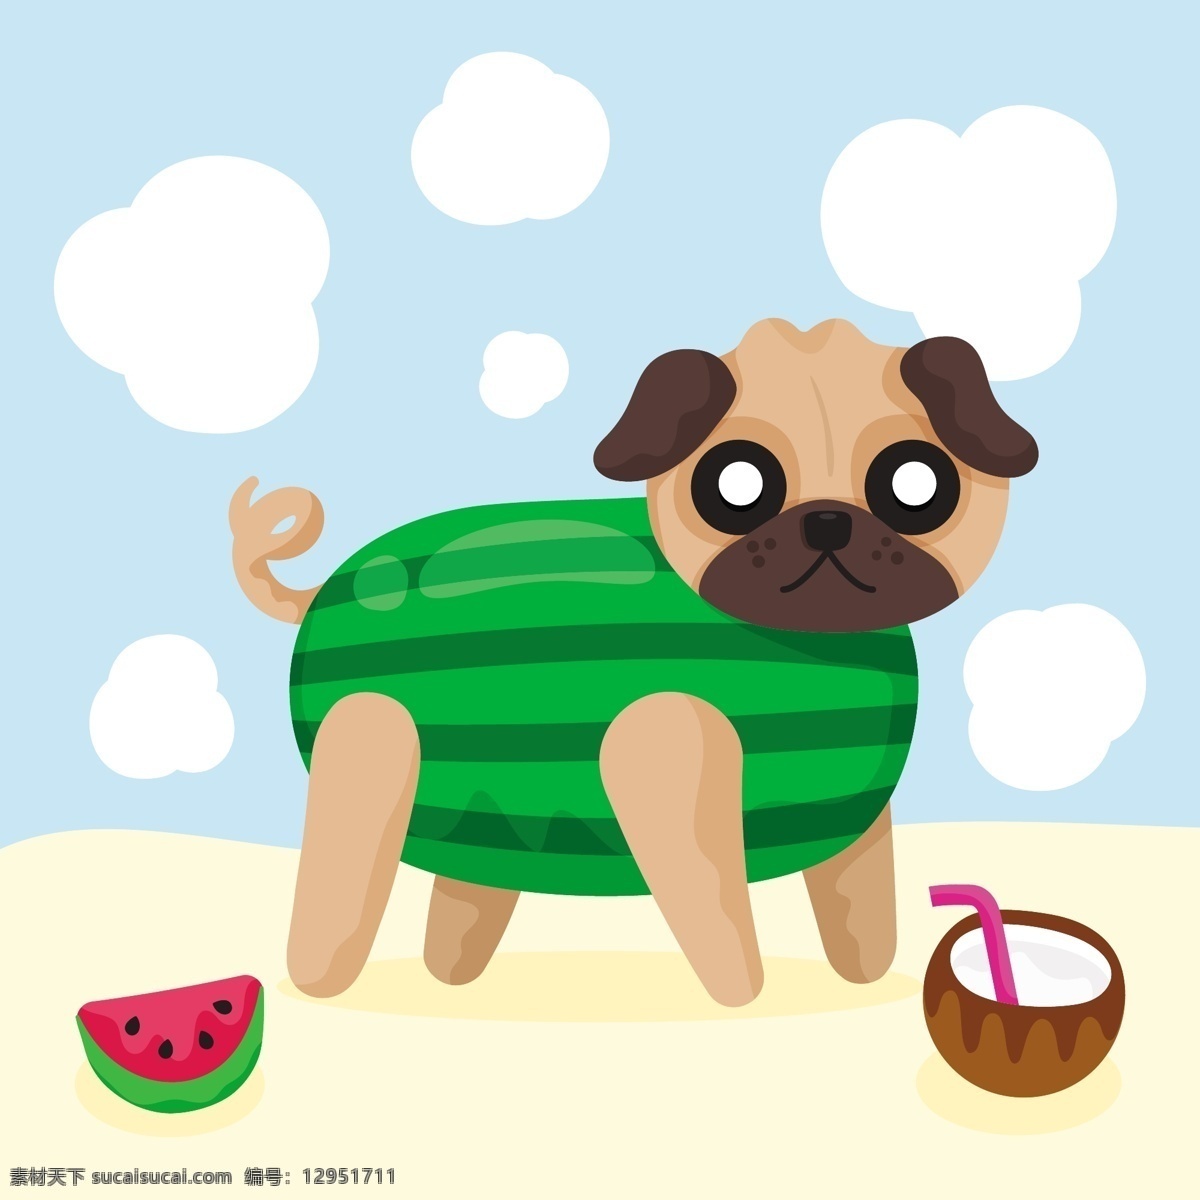 动物 狗 哈巴狗 卡通 可爱 可爱宠物 手绘 水果 西瓜 椰子 各种 的卡 通